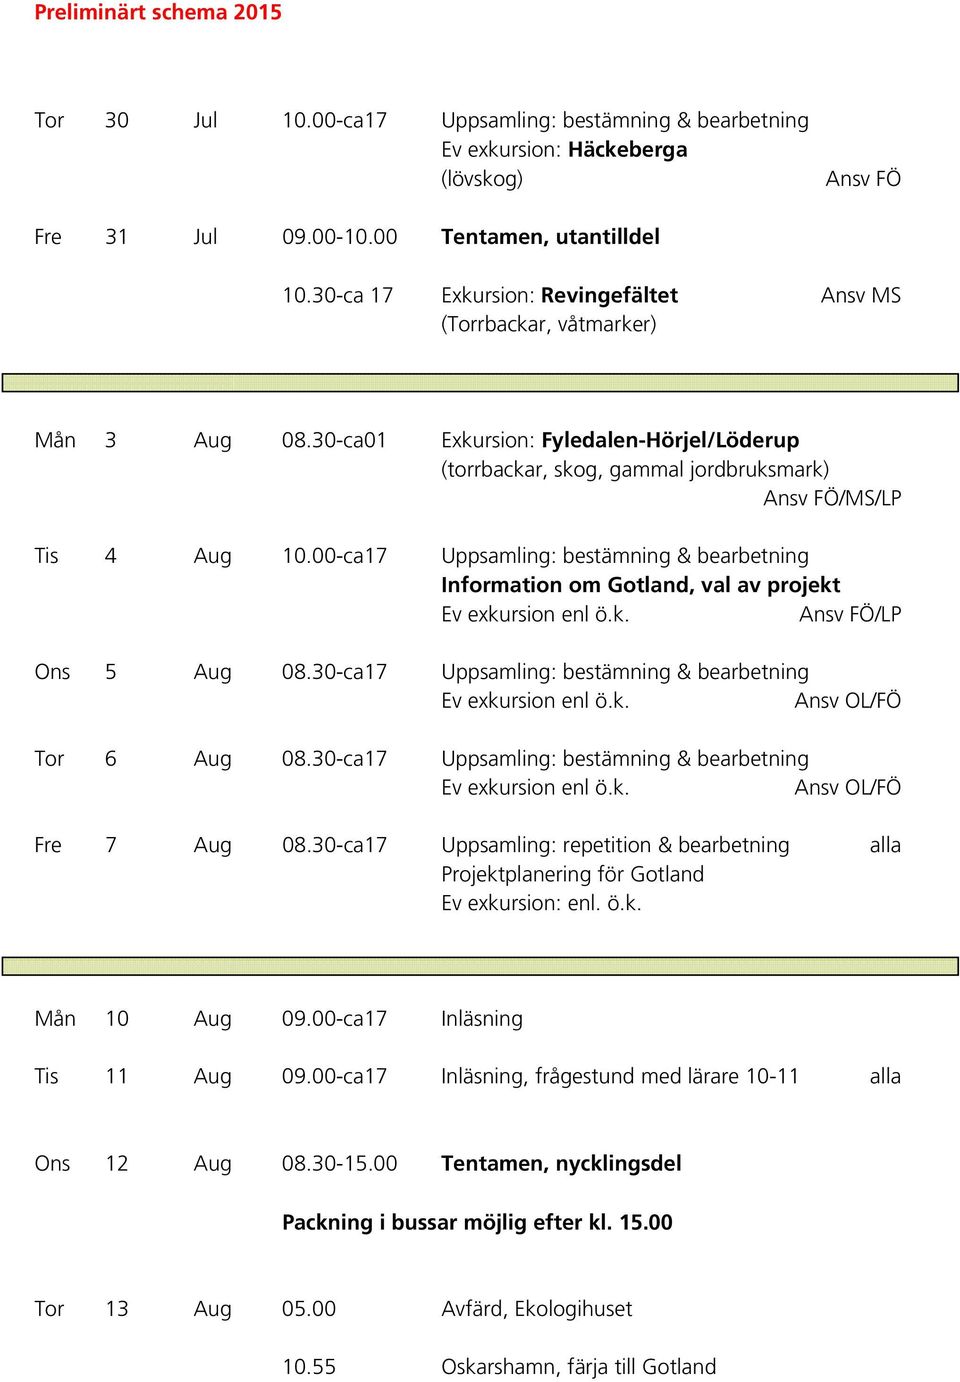 00-ca17 Uppsamling: bestämning & bearbetning Information om Gotland, val av projekt Ev exkursion enl ö.k. Ansv FÖ/LP Ons 5 Aug 08.30-ca17 Uppsamling: bestämning & bearbetning Ev exkursion enl ö.k. Ansv OL/FÖ Tor 6 Aug 08.